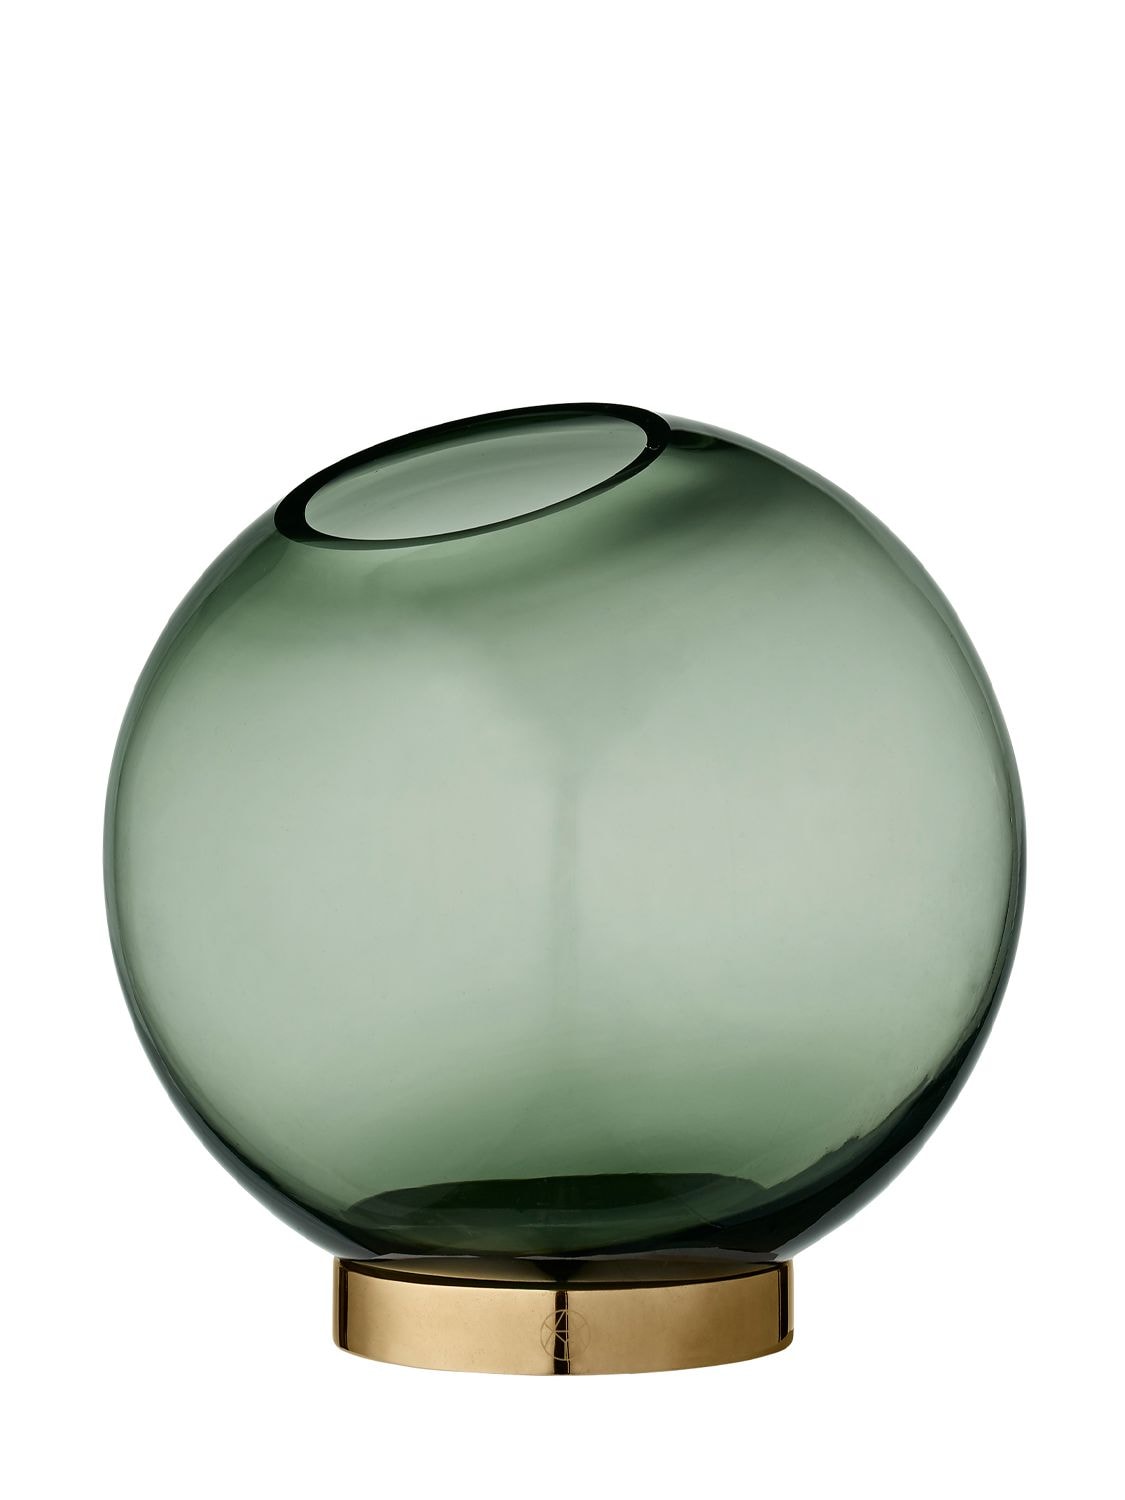 Image of Globe Vase